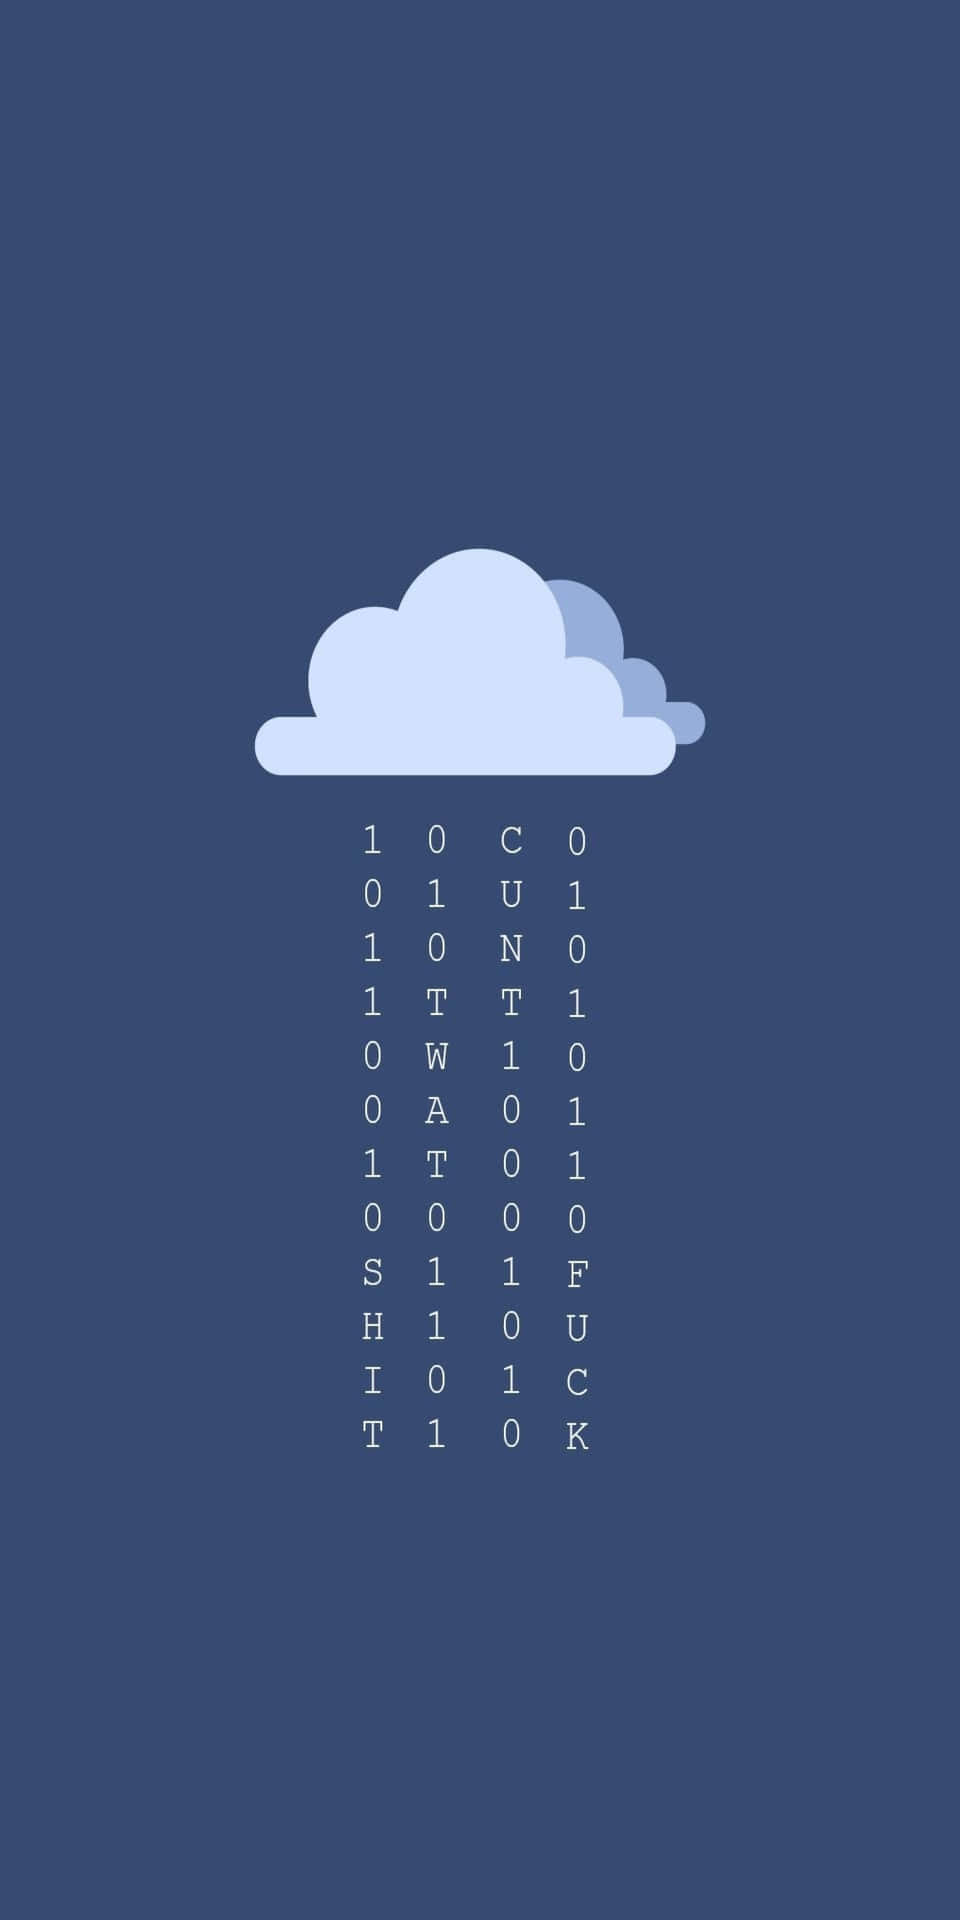 Fondominimalista De Pixel 3 Con Nubes Lluviosas Y Un Fondo Azul.